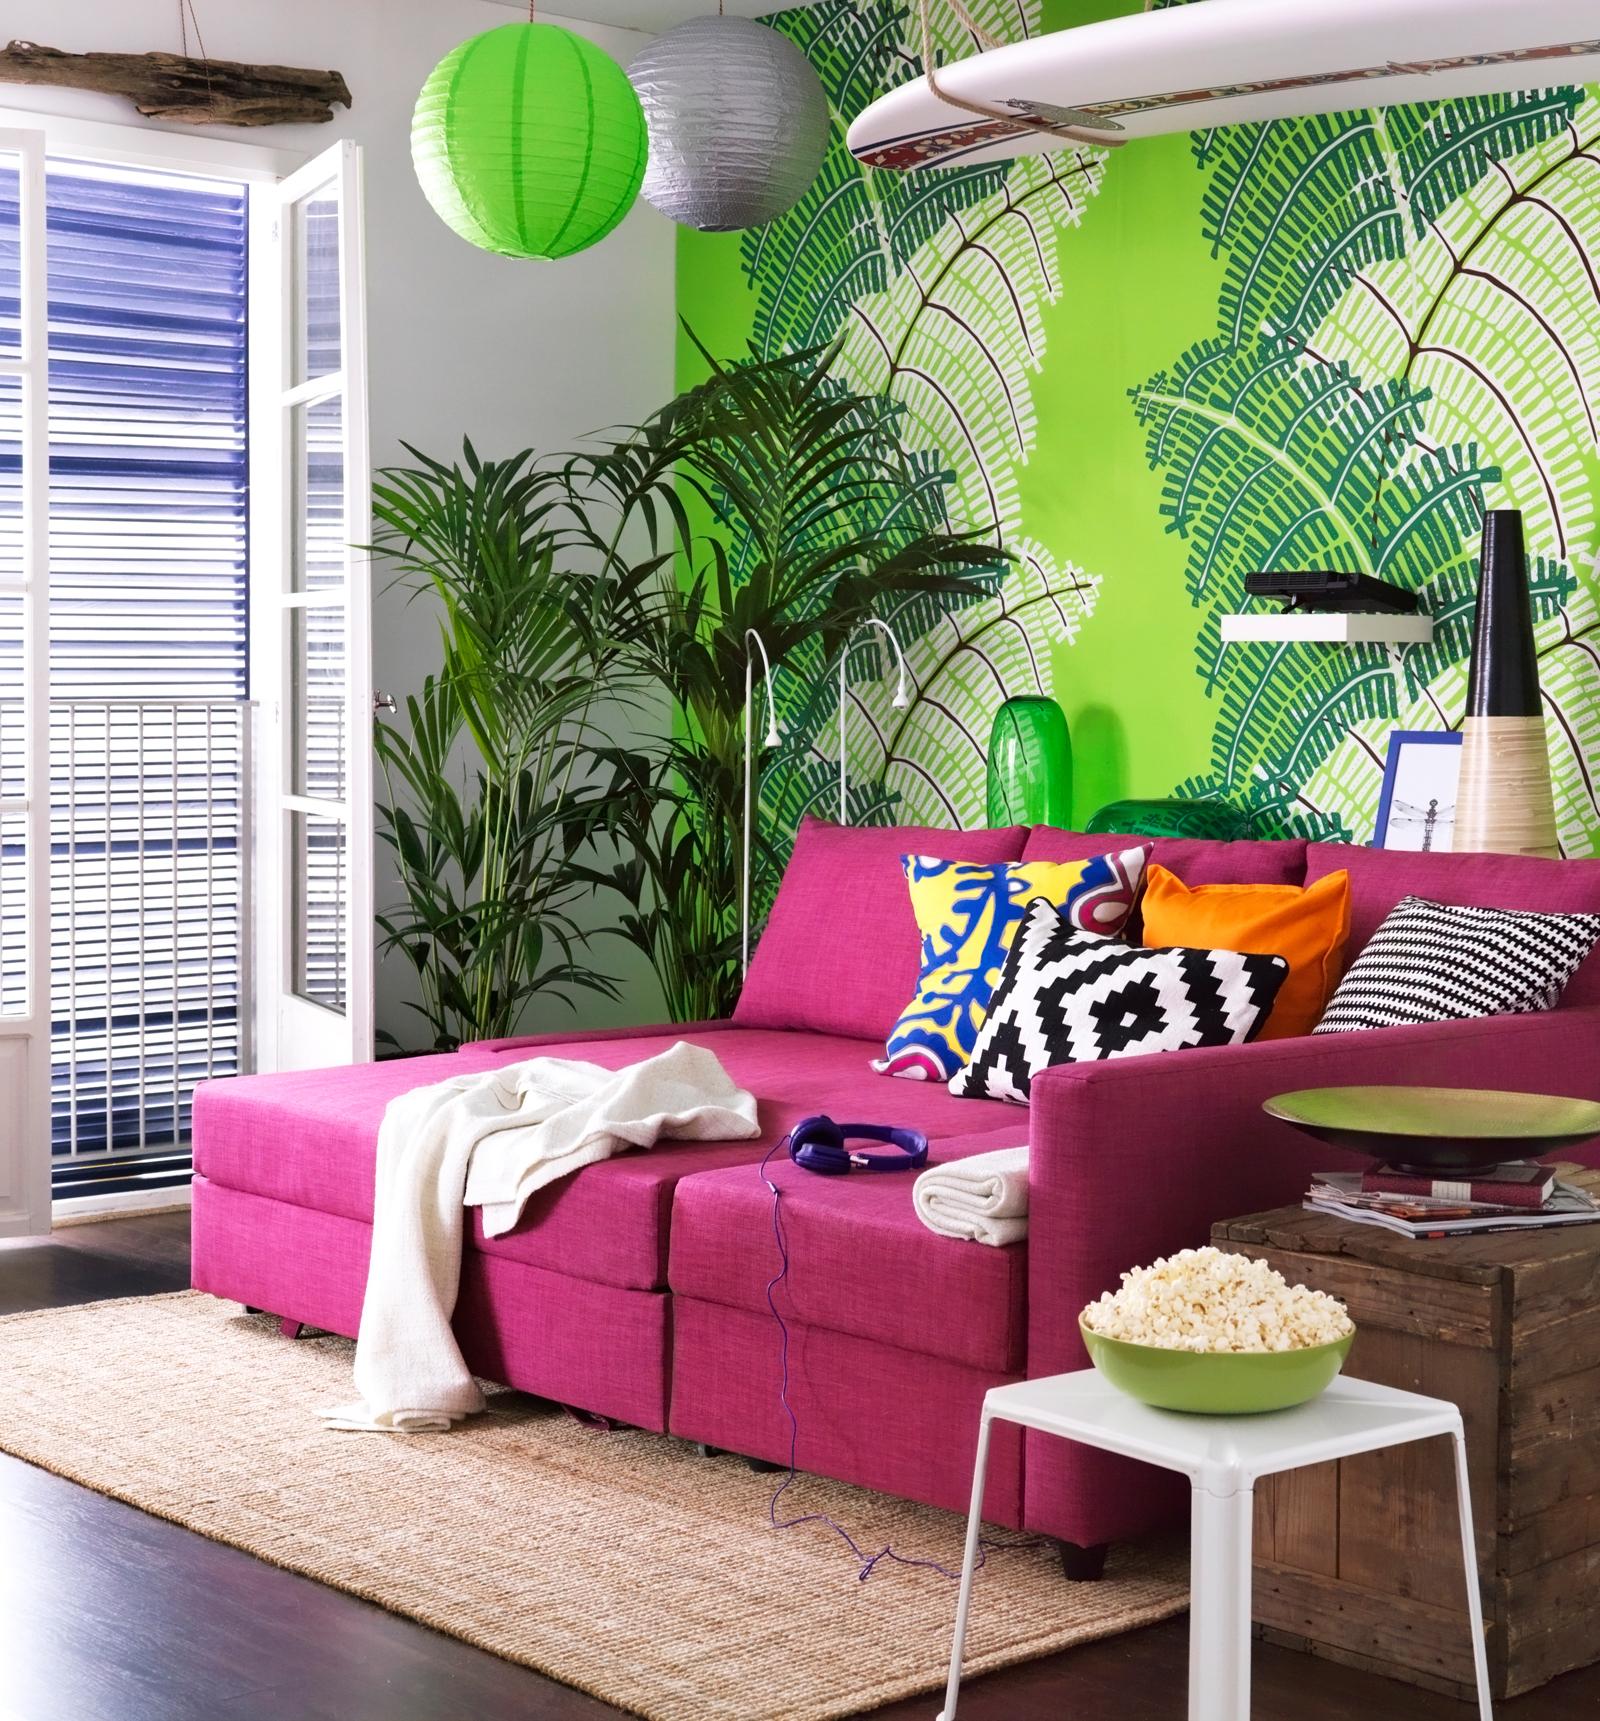 Pinkfarbenes Sofa vor grüner Motivtapete #ikea #weißerhocker #holztruhe #sisalteppich #grüntapete ©Inter IKEA Systems B.V